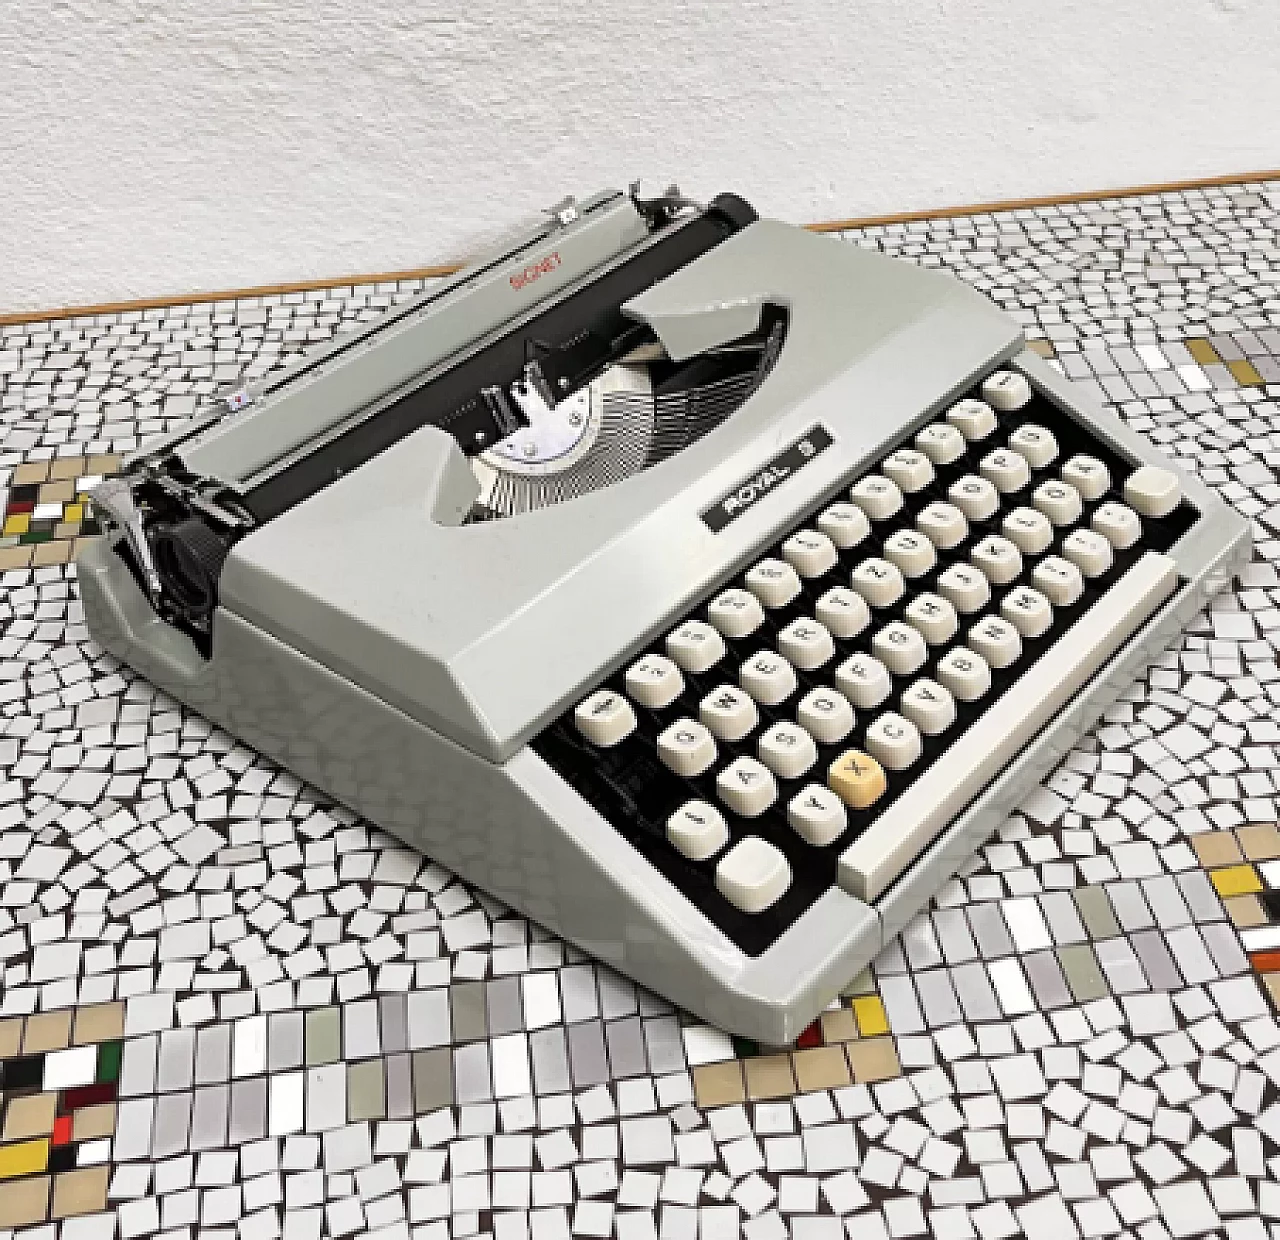 Japanese Royal Signet typewriter with case, 1970s 10